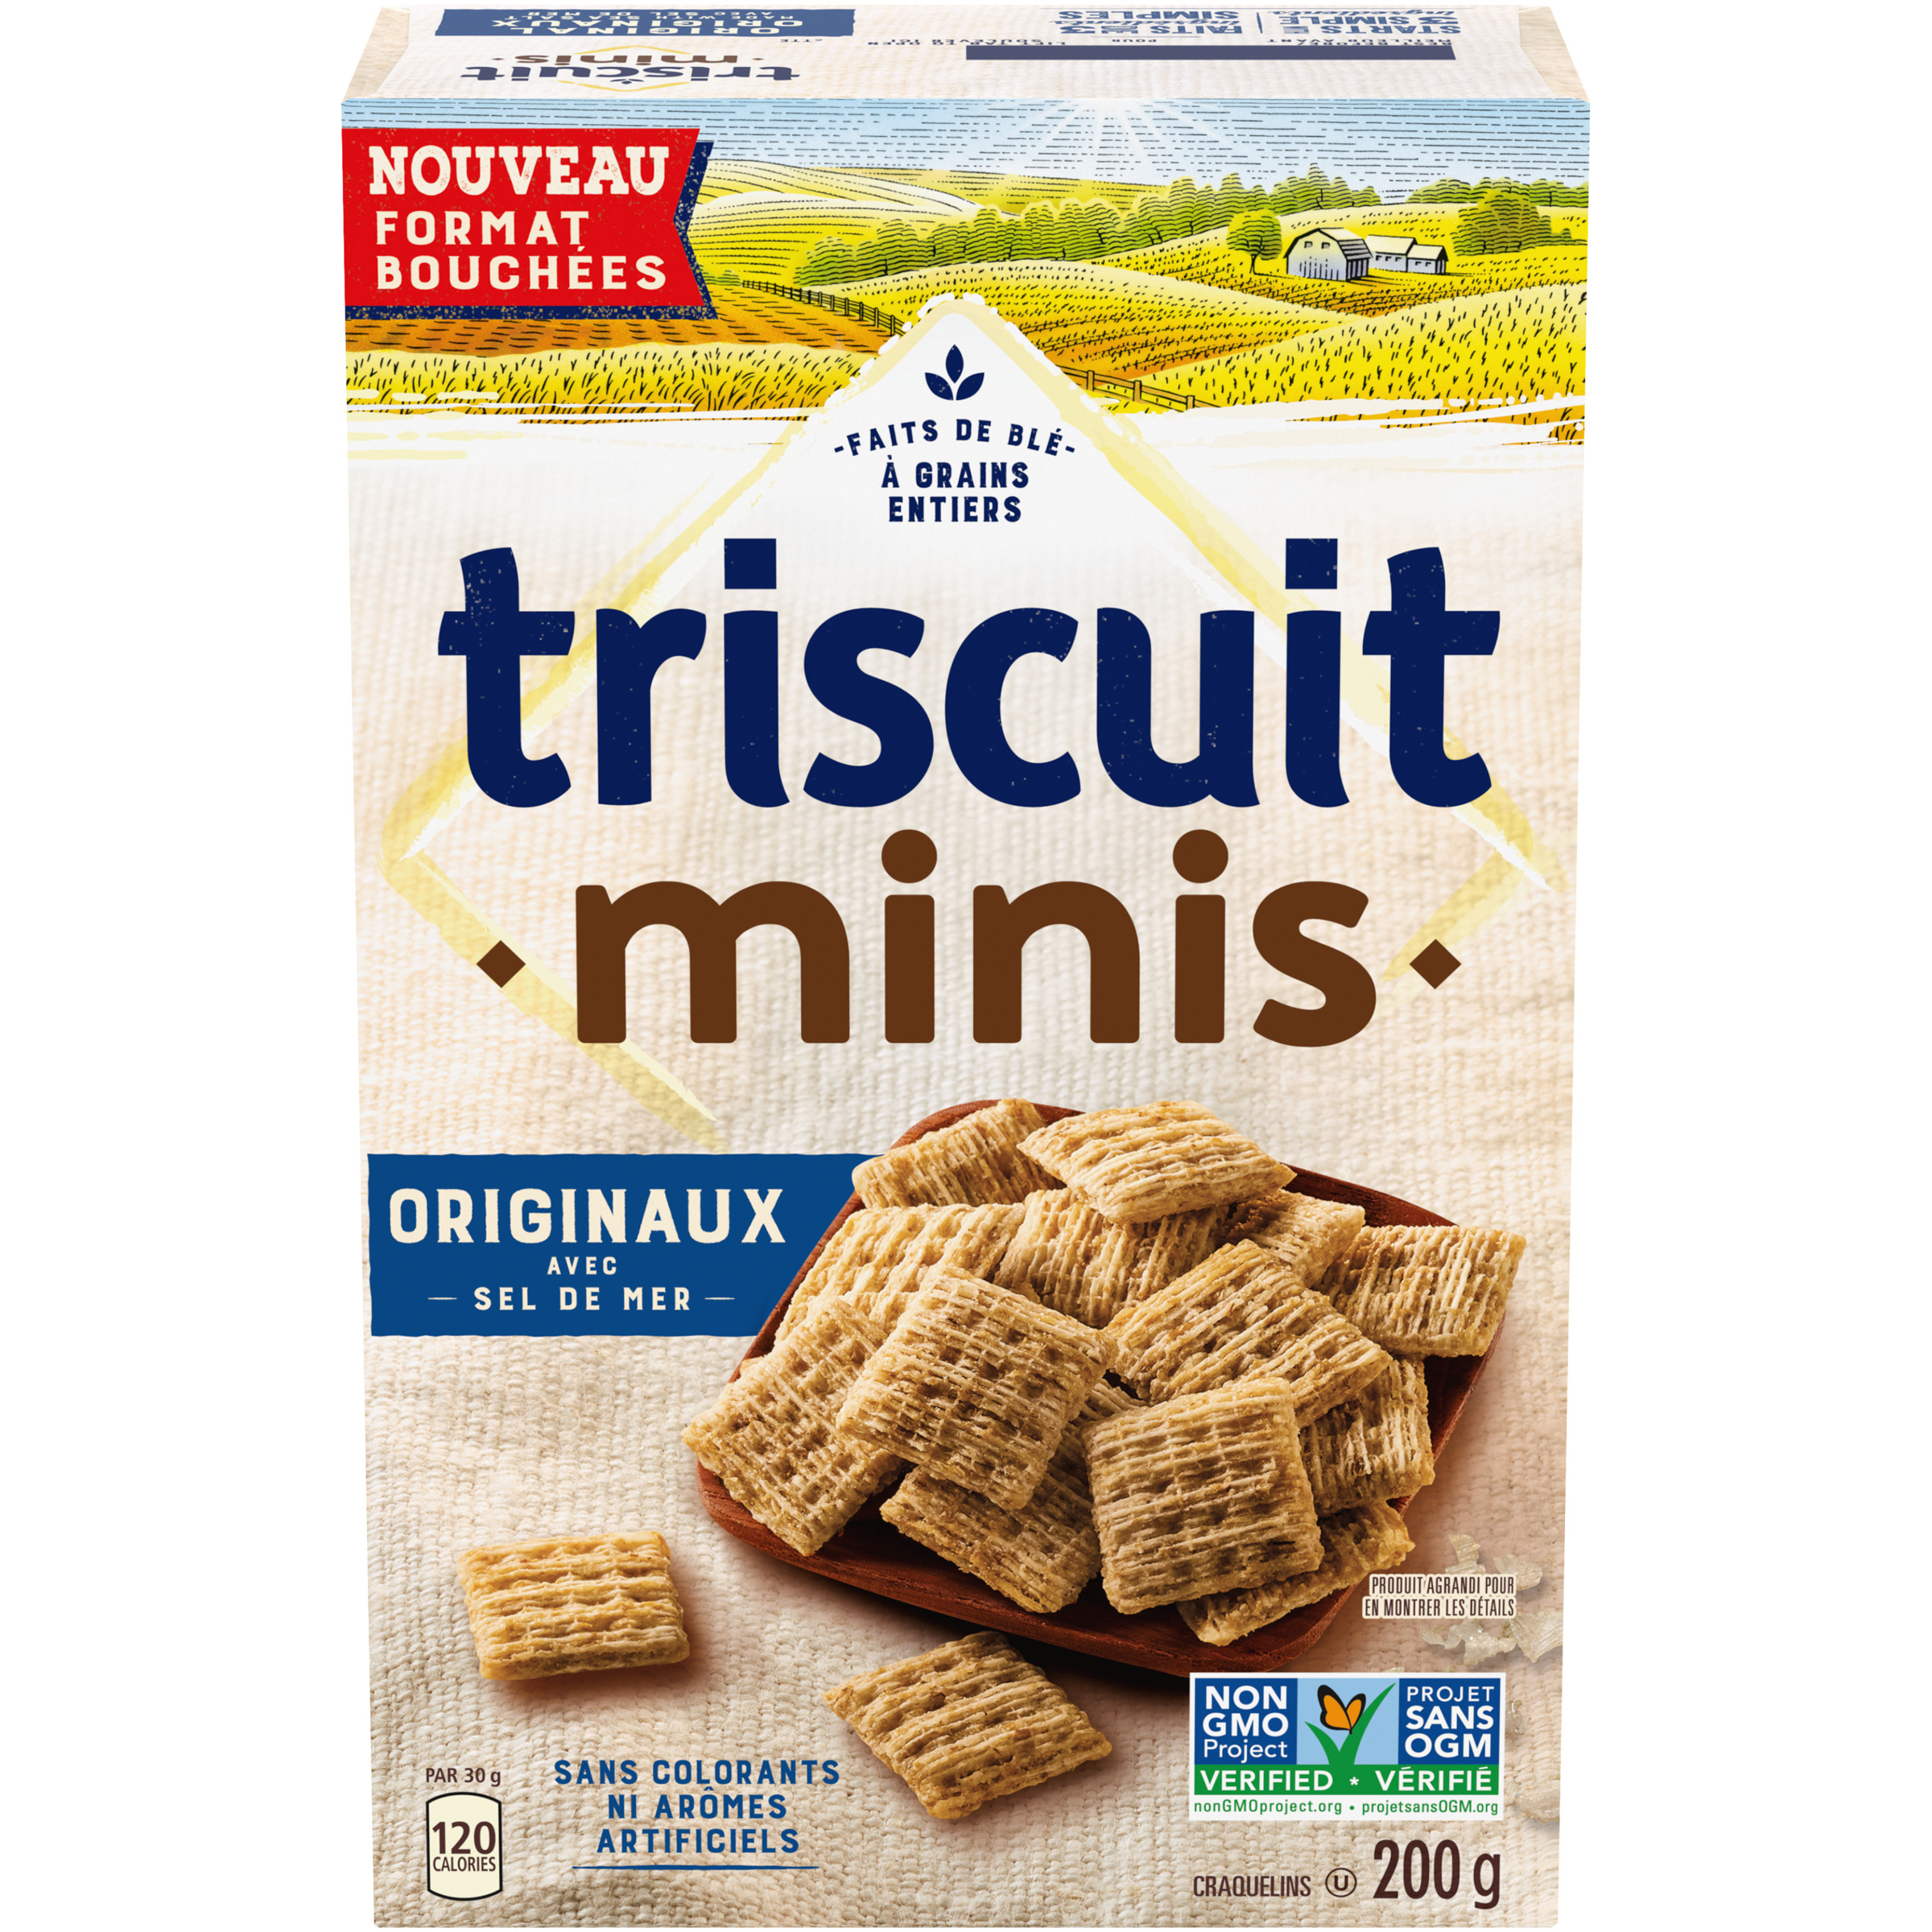 Triscuit Minis Original Crackers 200 G-0